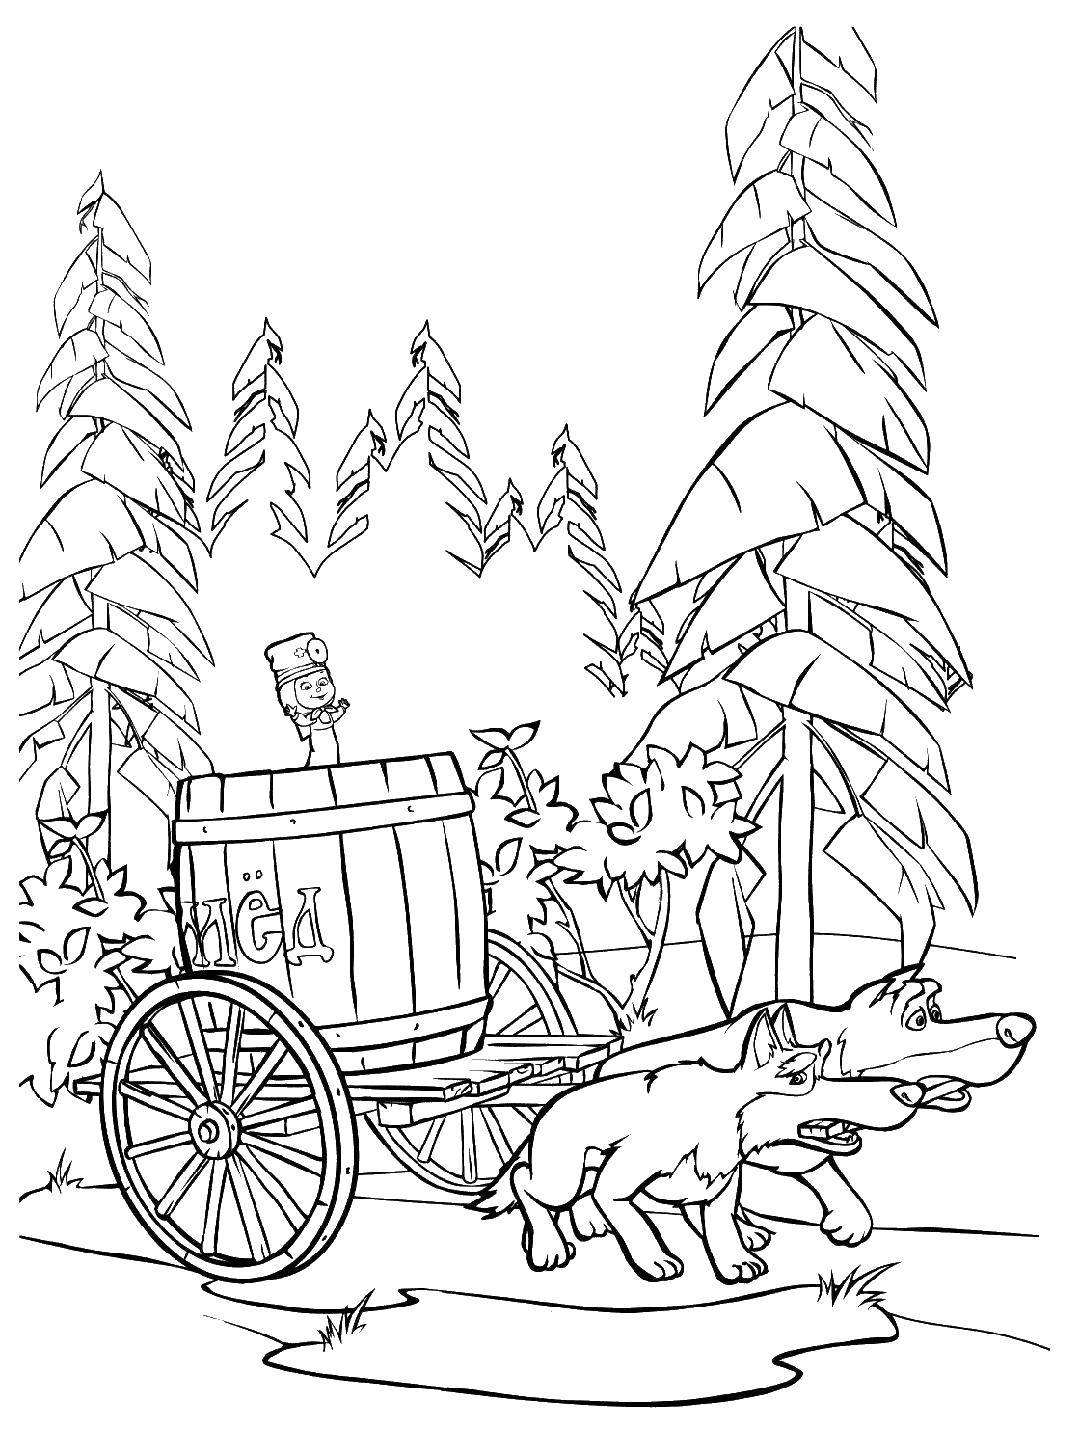 Раскраски для детей про озорную Машу из мультфильма Маша и медведь  Маша и волки